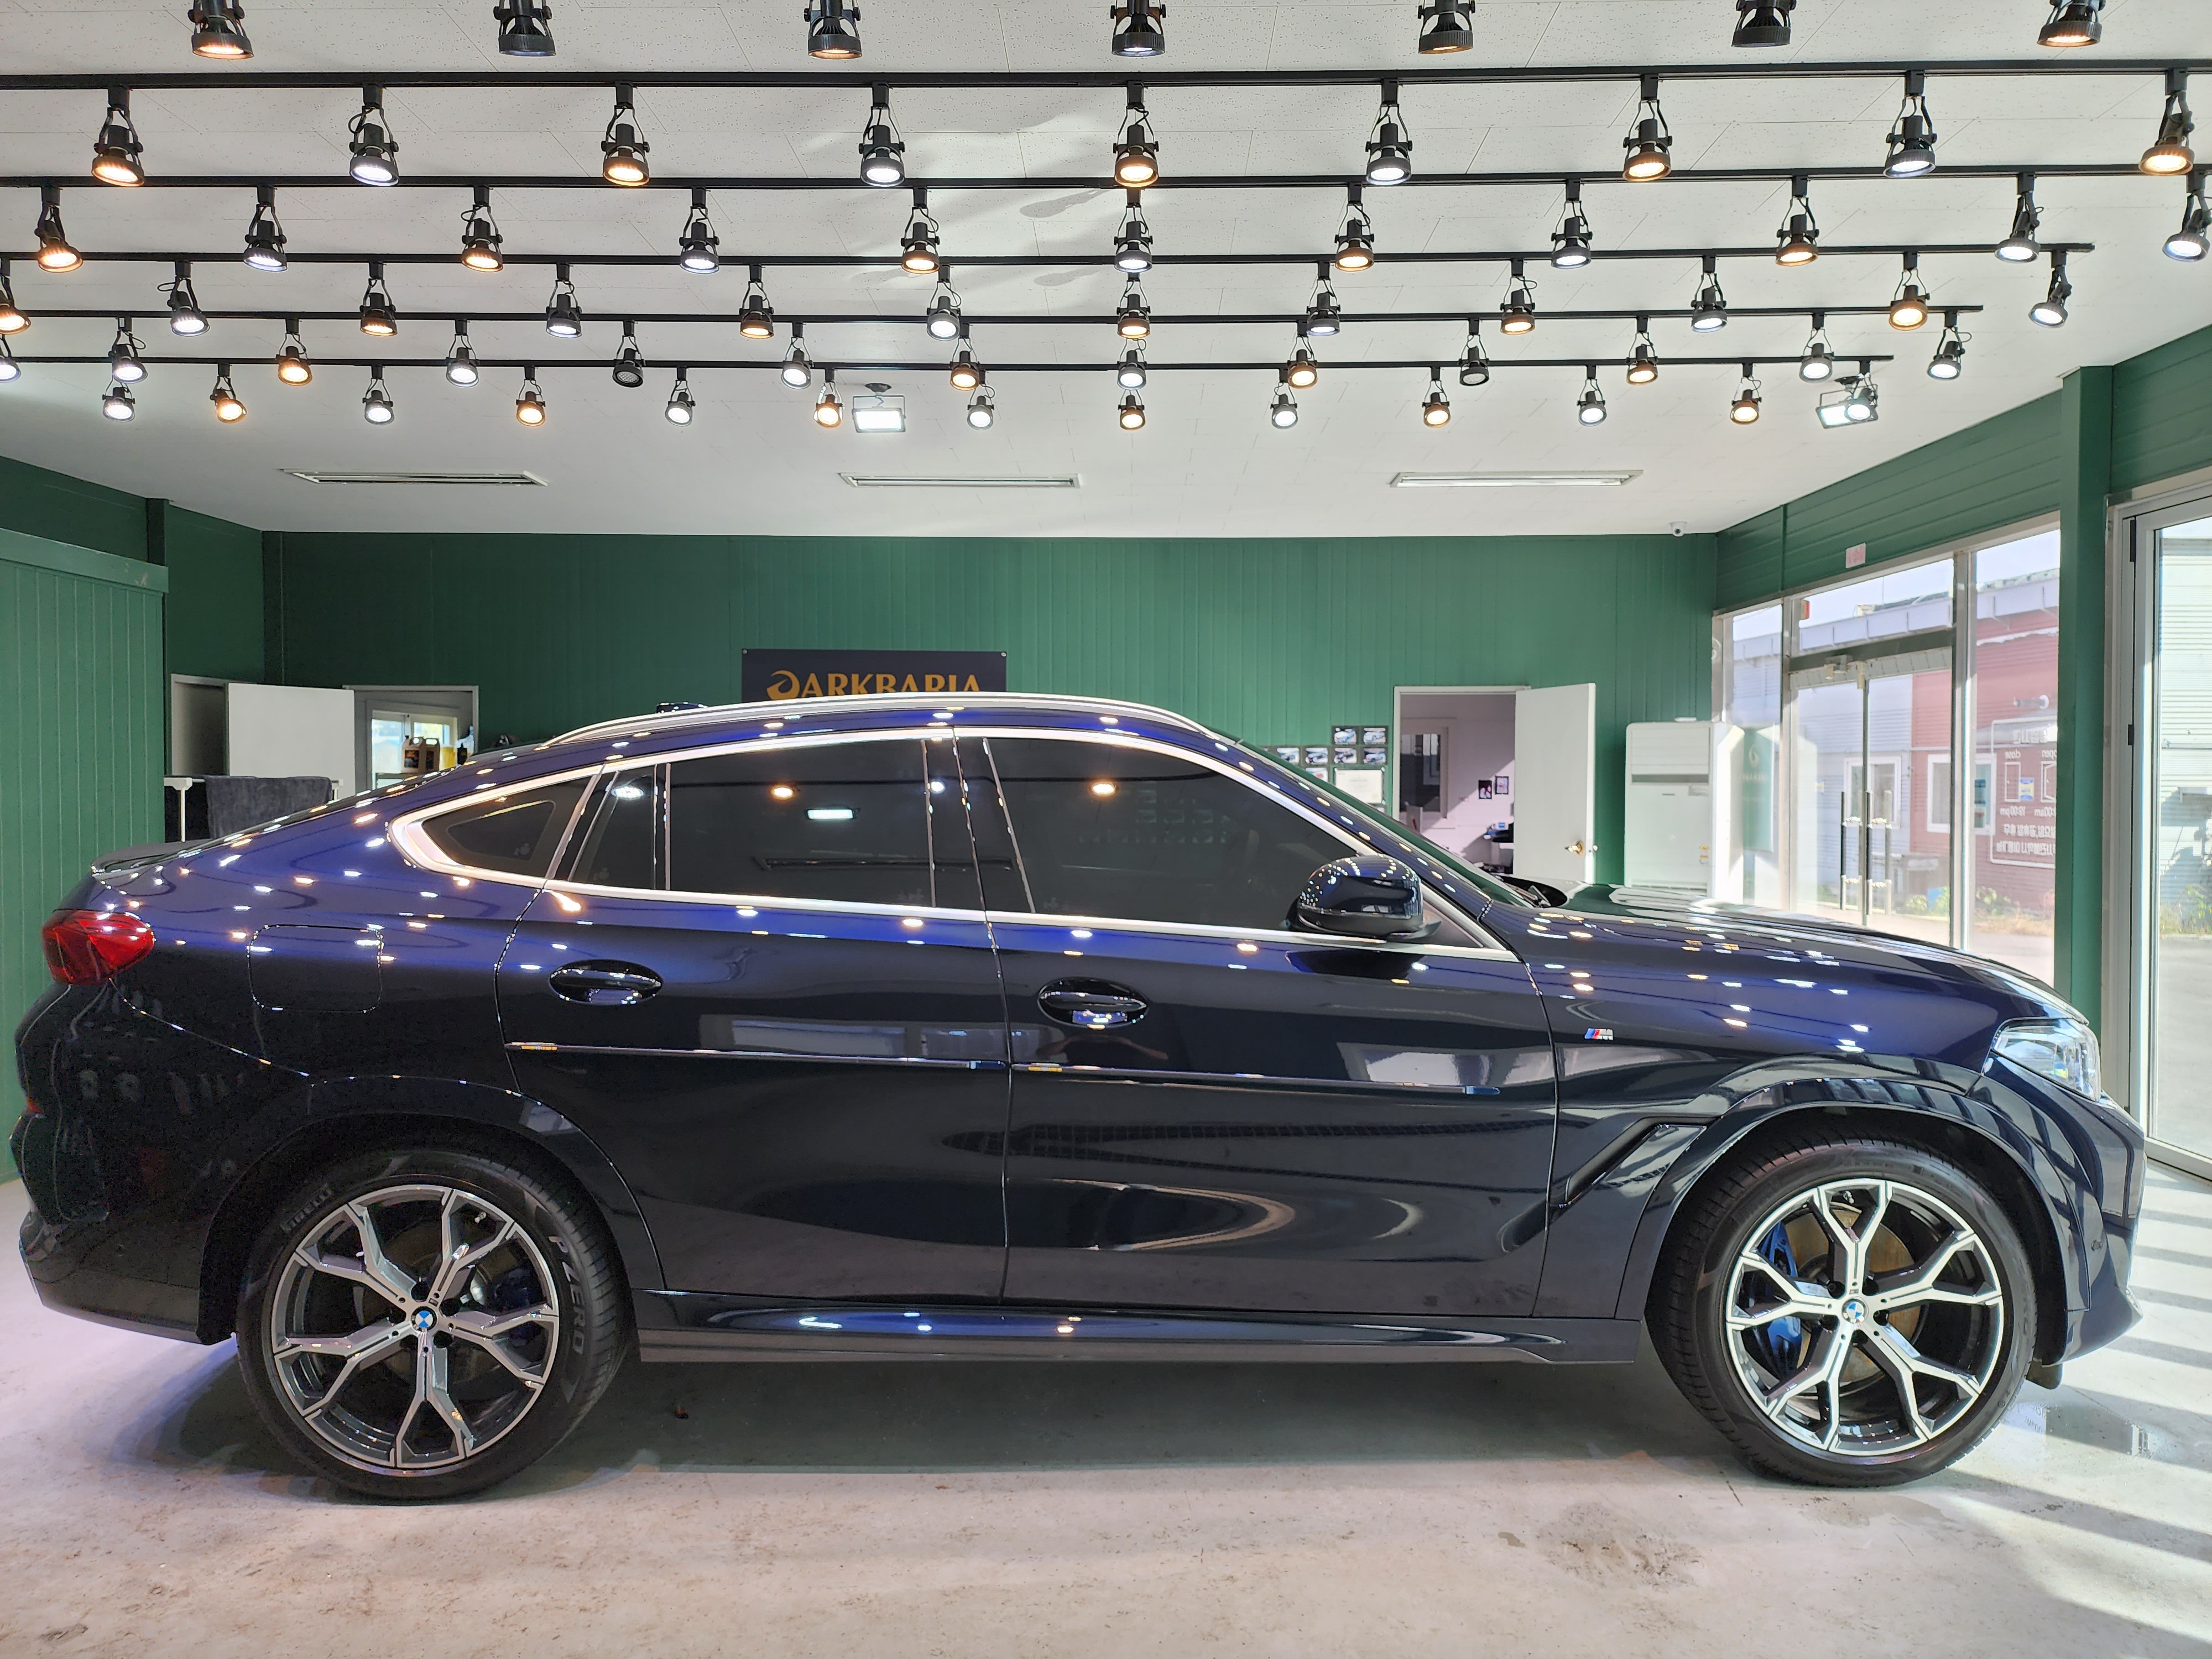 아산 음봉면 / 코팅 / [천안 아산 하이어디테일링] BMW X6 광택 유리막코팅 휠코팅 시공 / BMW / X6